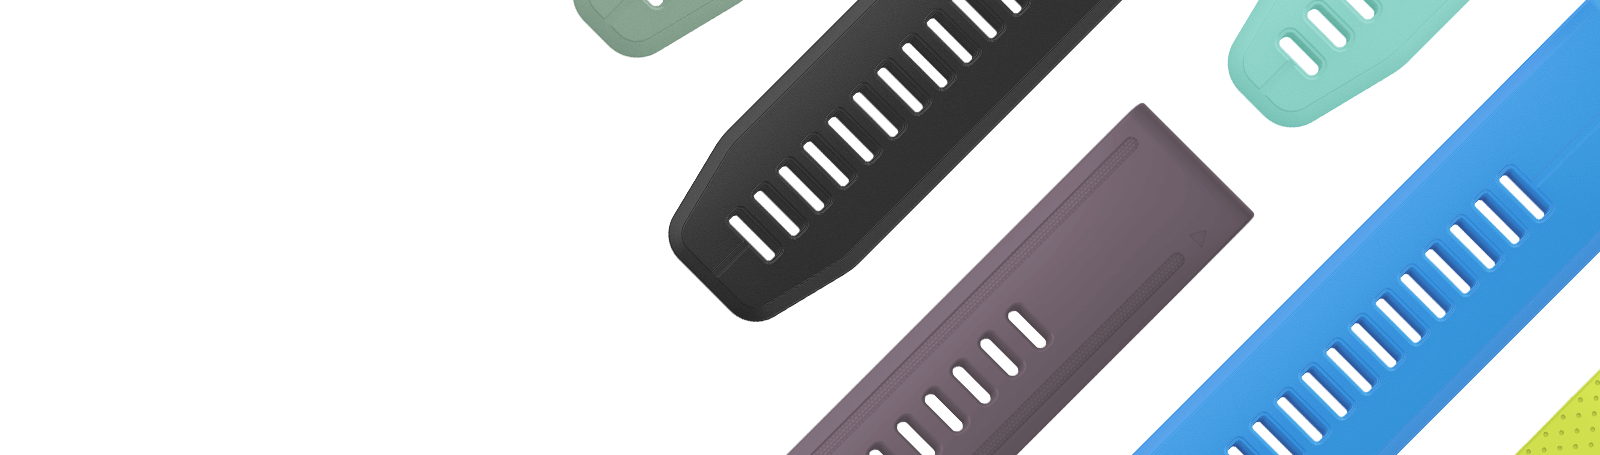 Las correas QuickFit®: adaptar la apariencia del reloj a tu estilo.